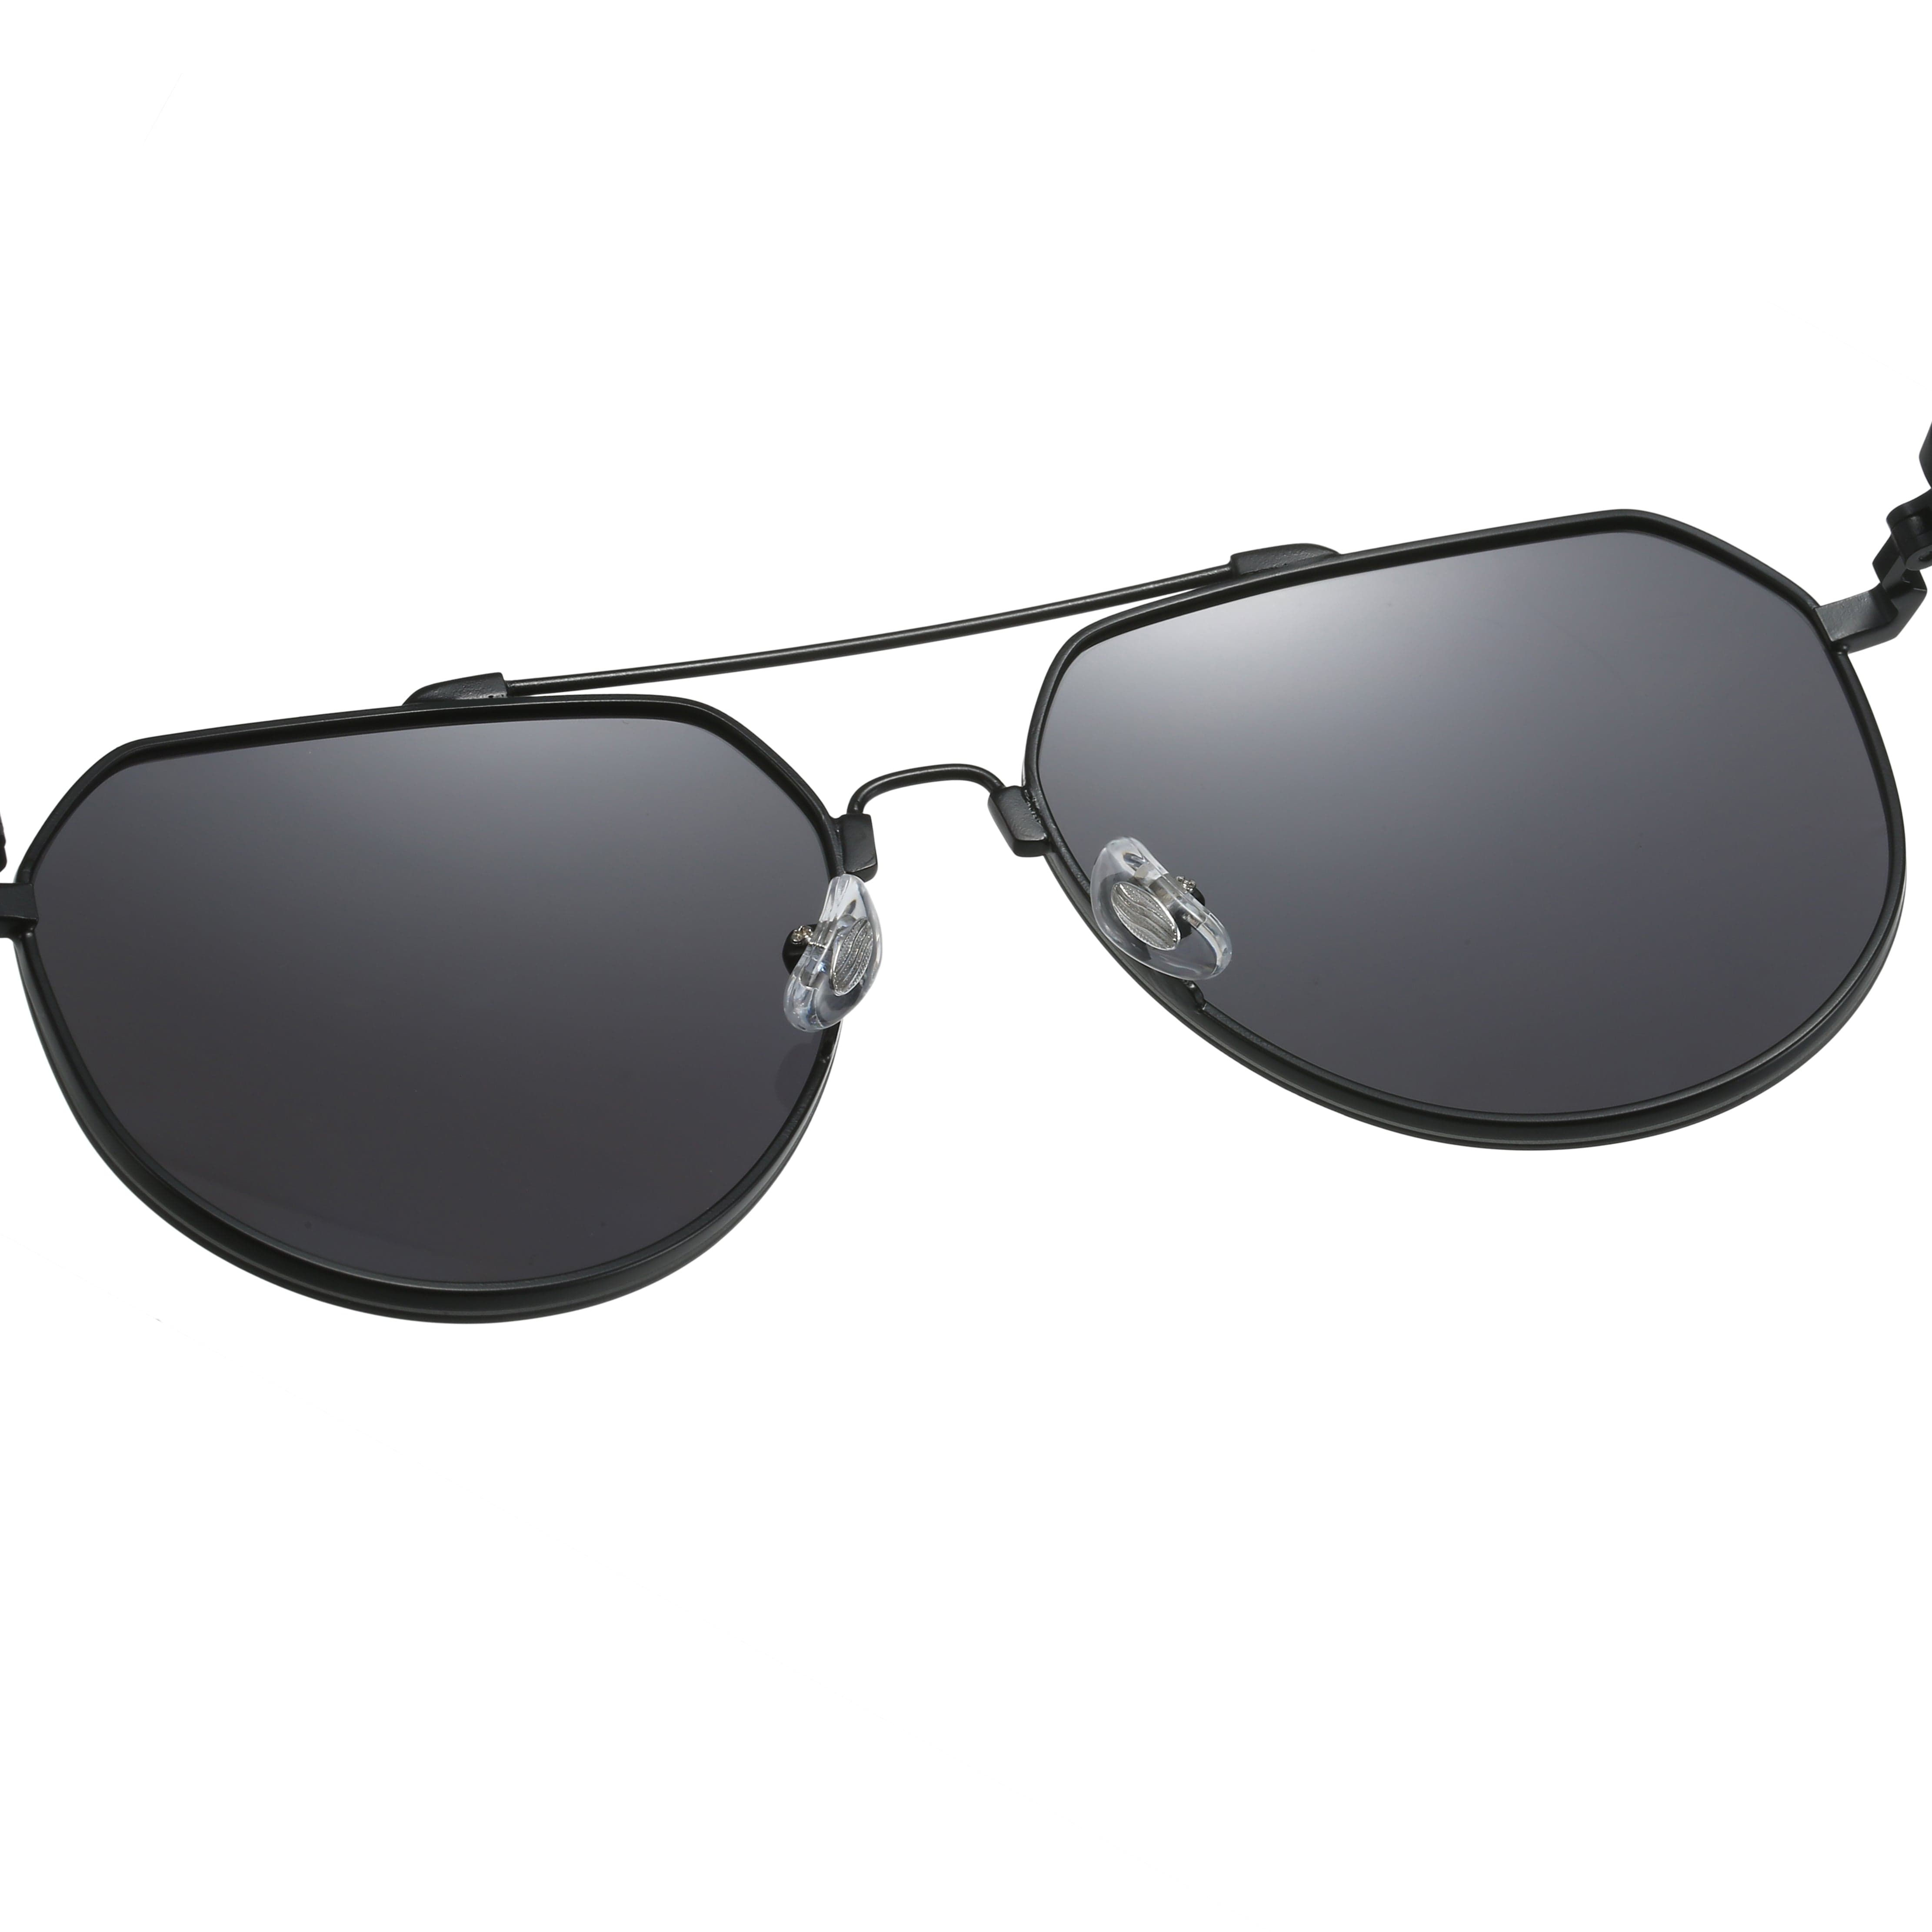 GIUSTIZIERI VECCHI Sunglasses Medium / Black SunSpark Aviator Uno